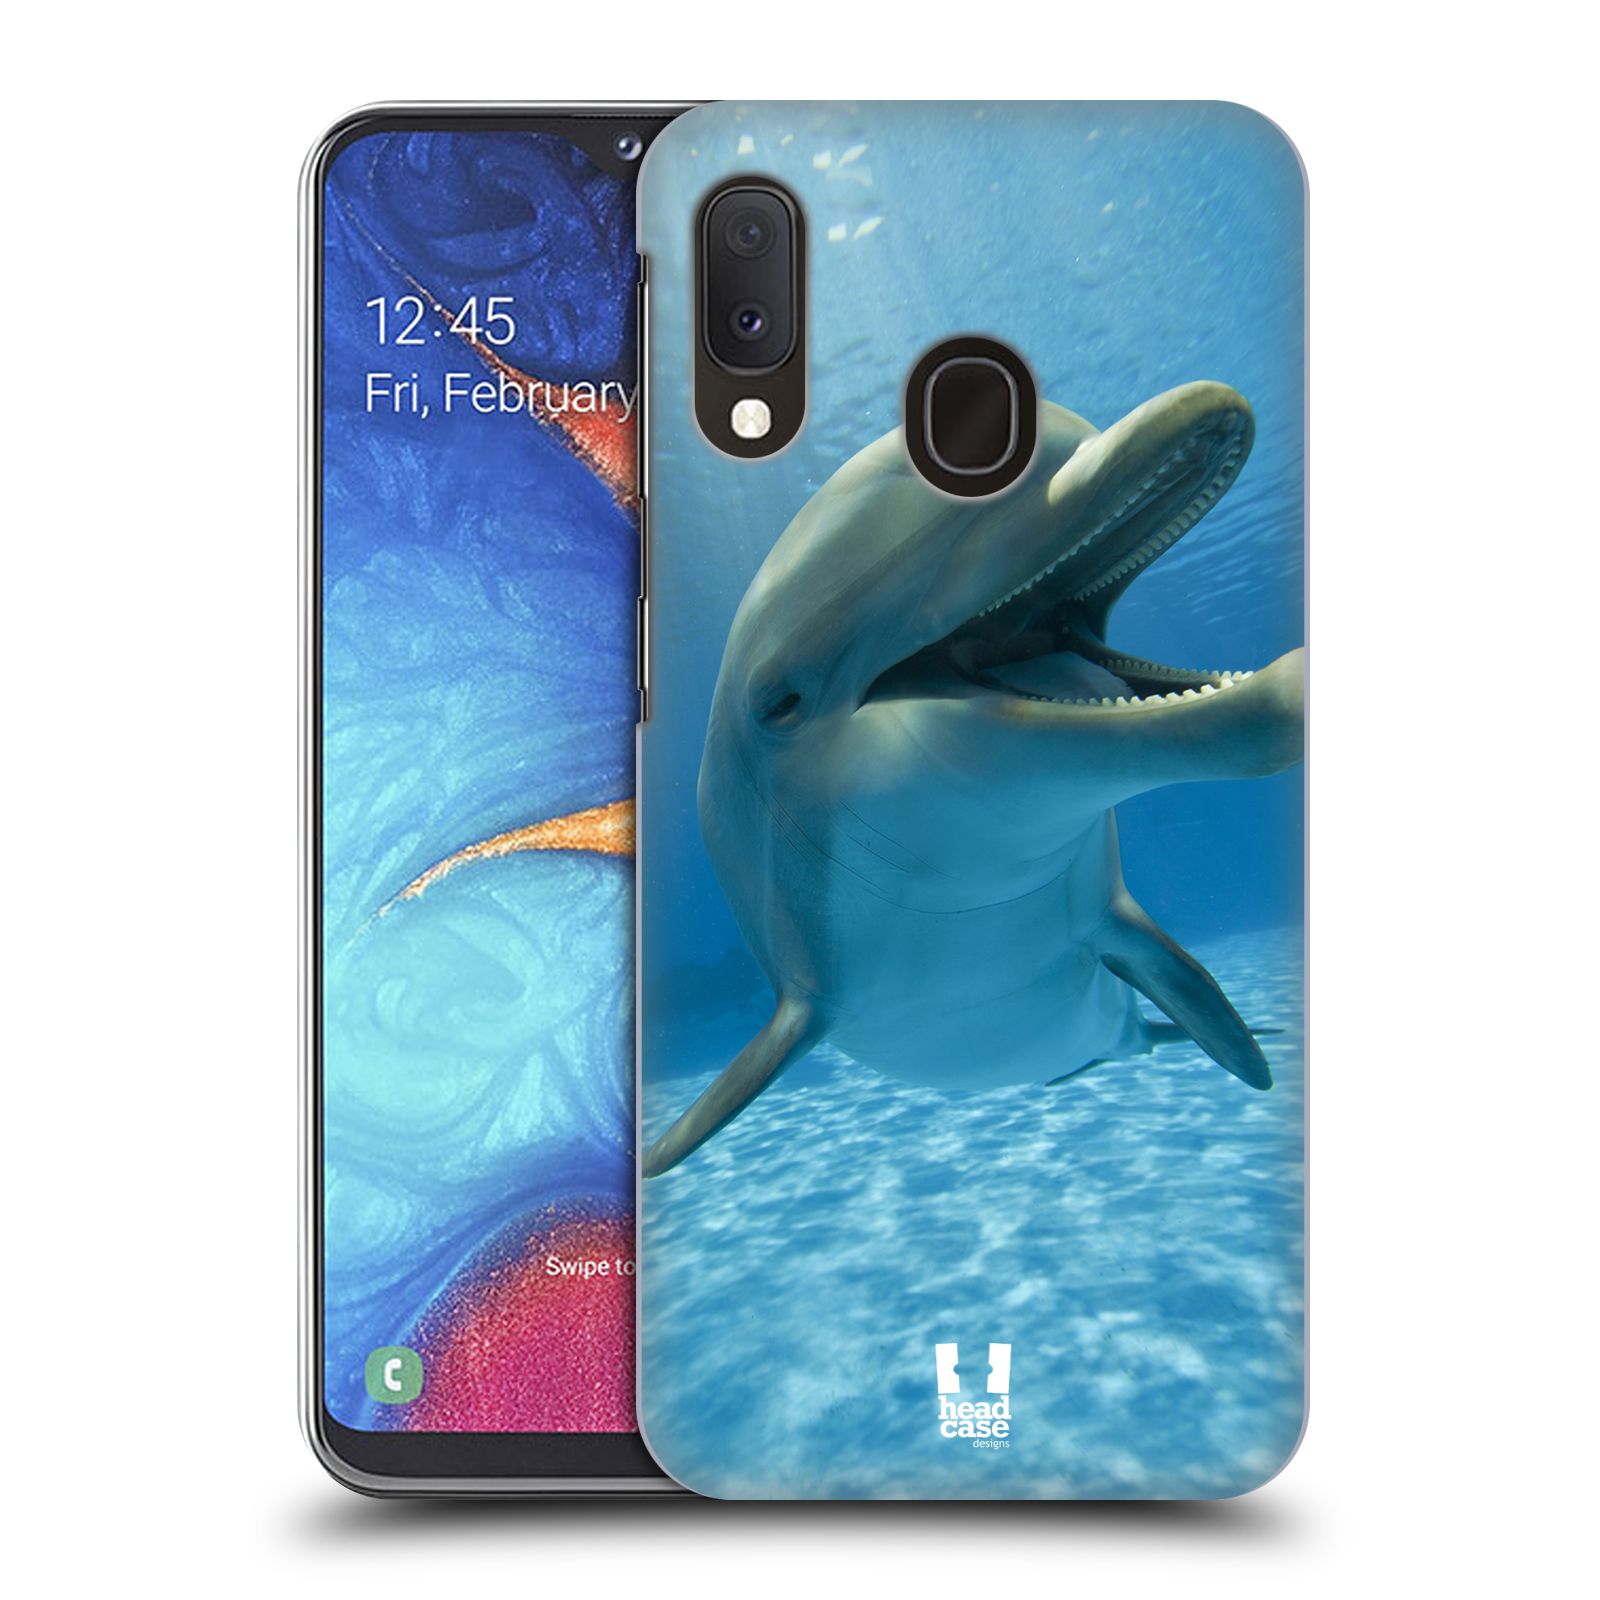 Zadní obal pro mobil Samsung Galaxy A20E - HEAD CASE - Svět zvířat delfín v moři